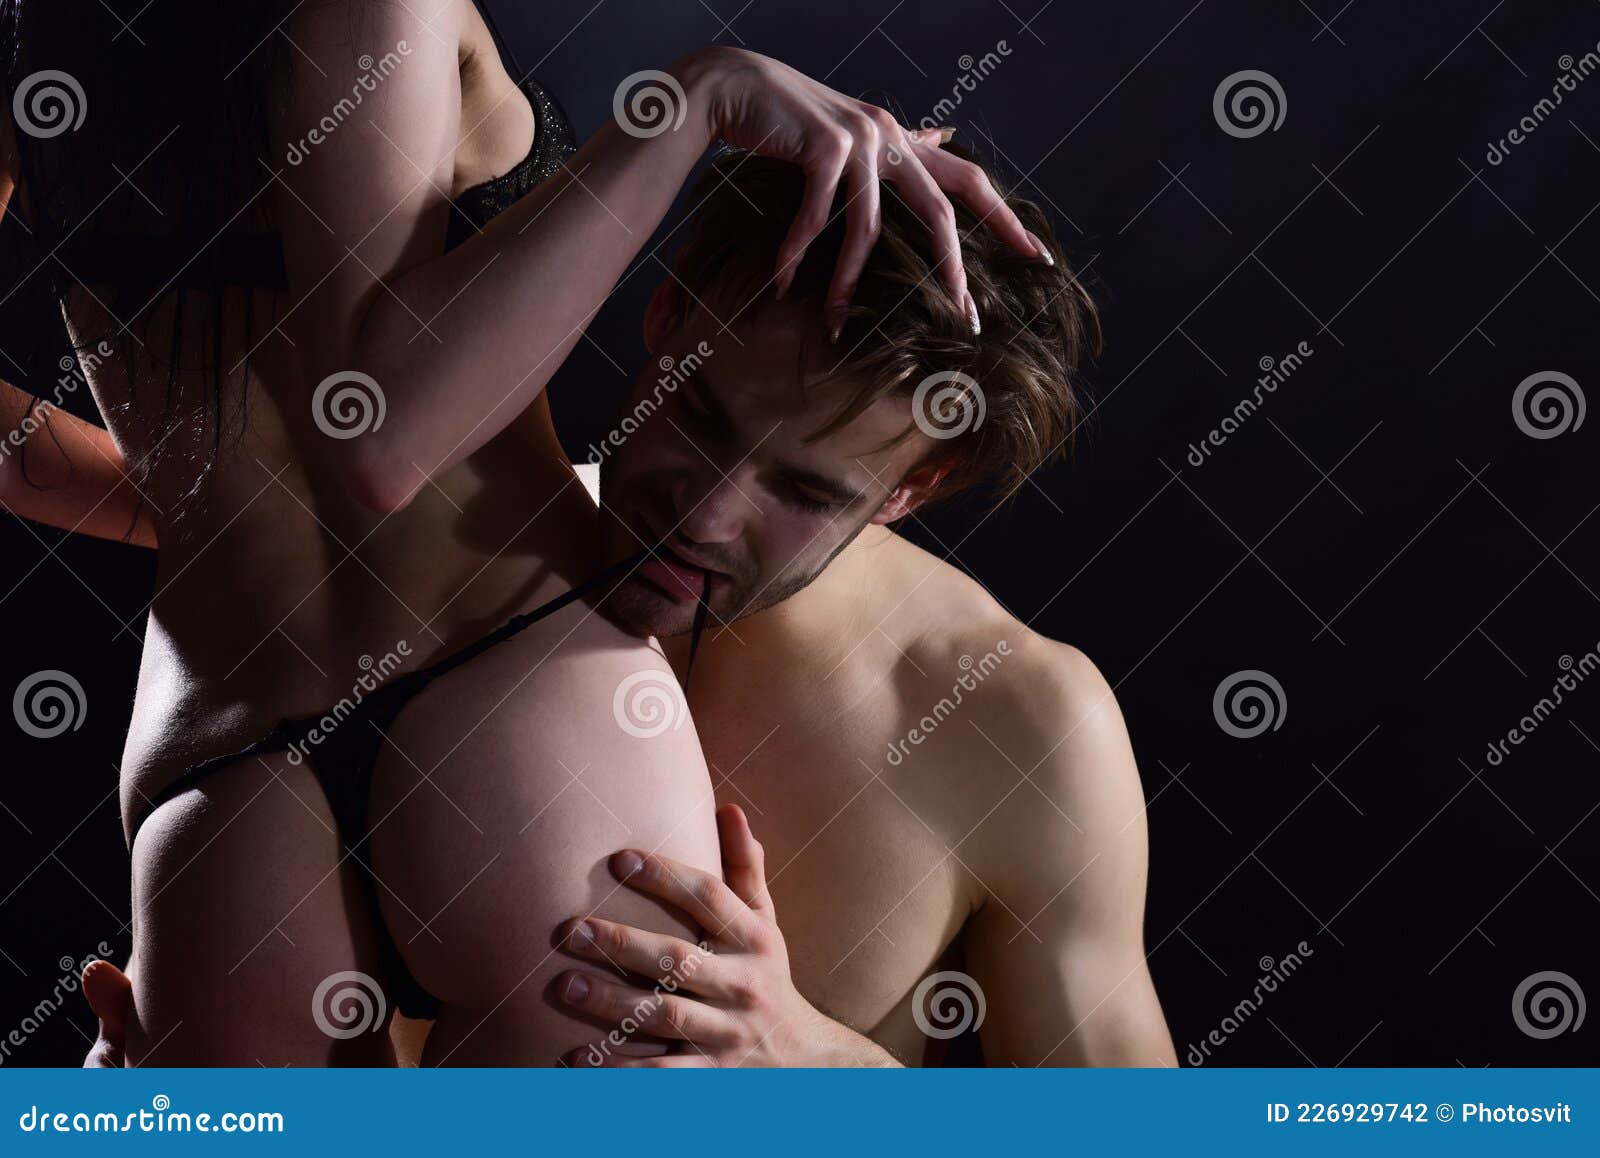 сексуальные фото голых мужчин